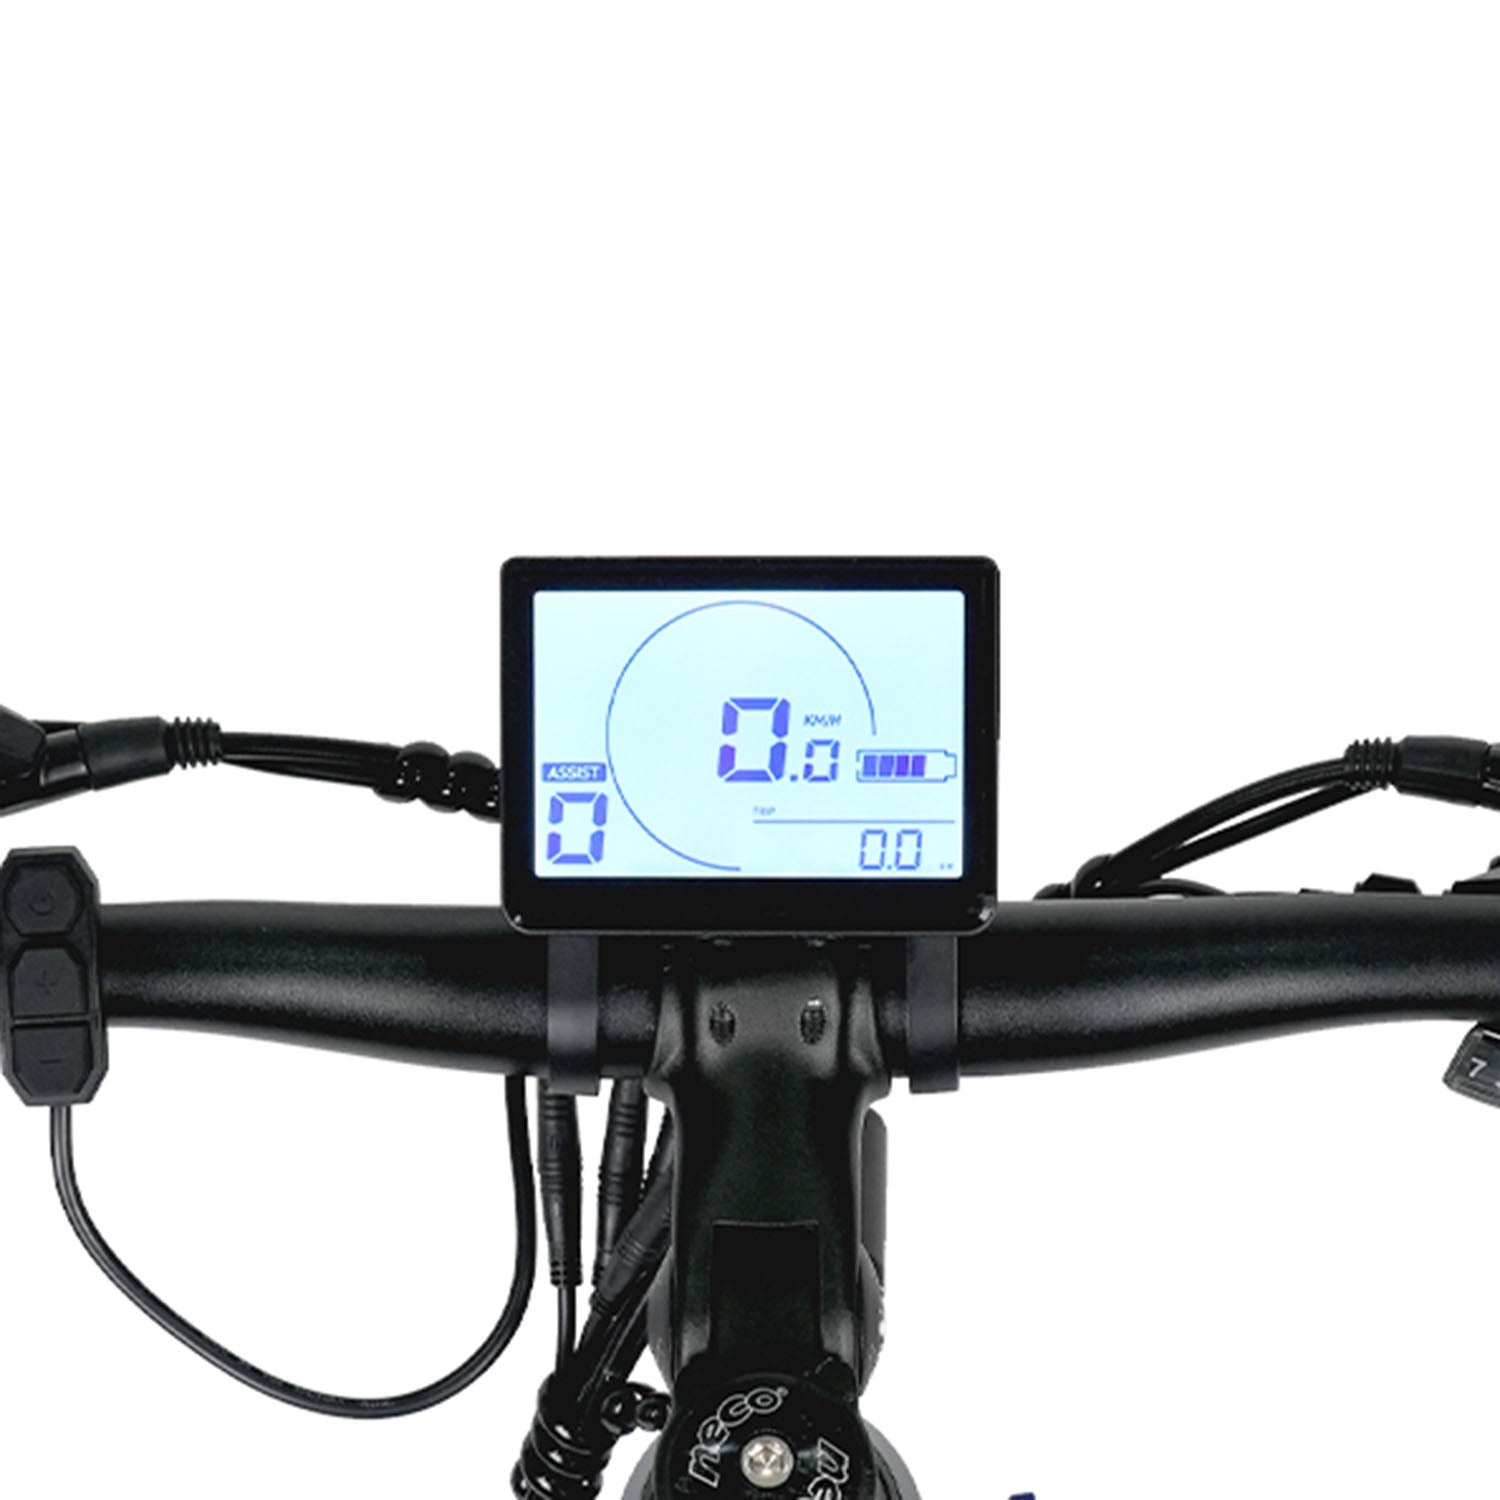 Molicycle R1 250W 26" Electric Trekking Bike City E-bike 14.5Ah [Pre-Order]